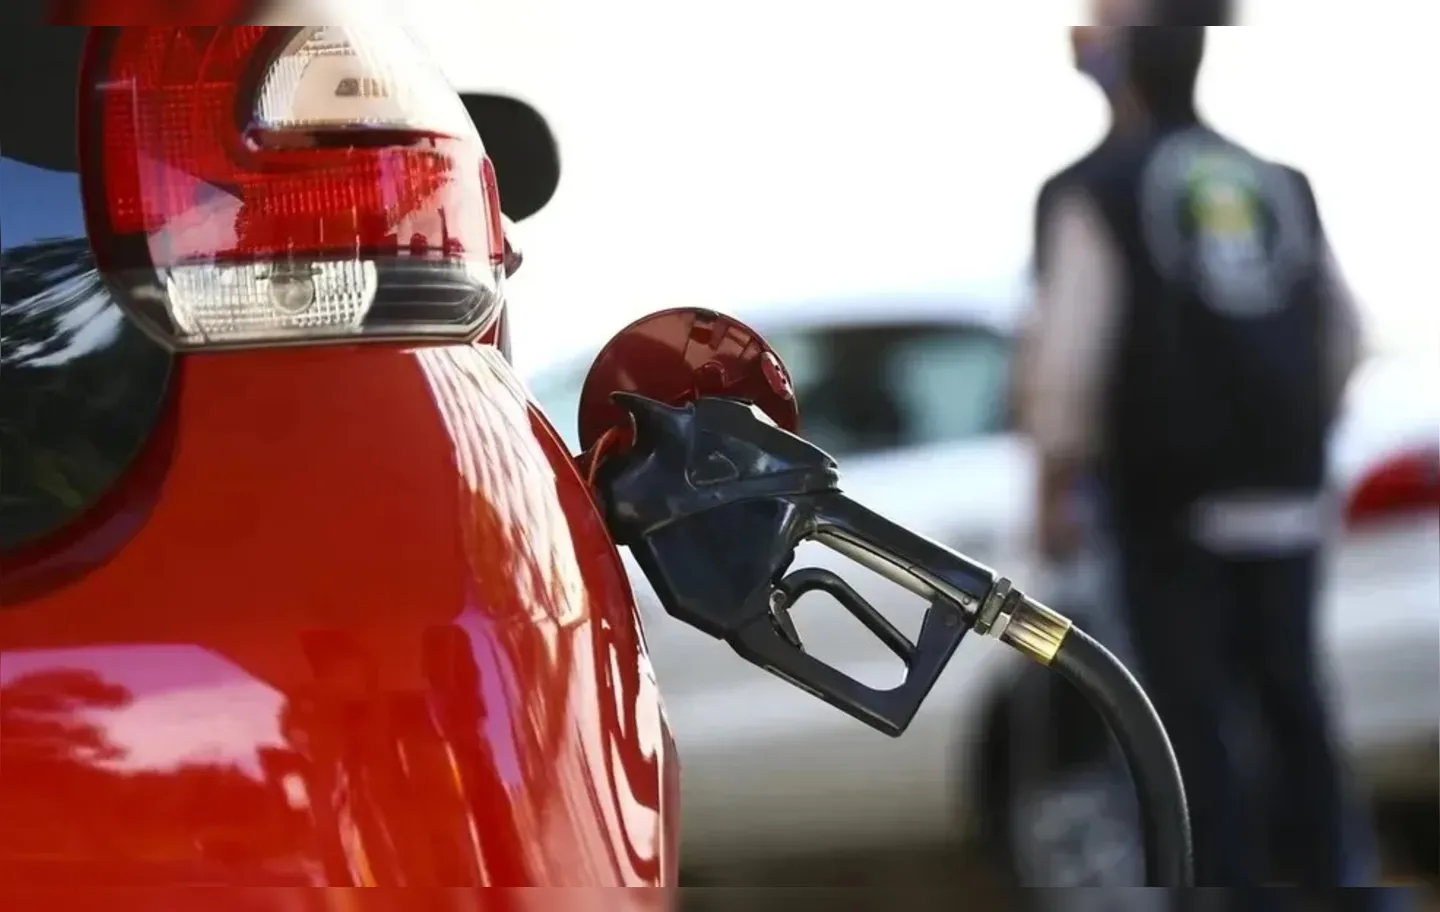 O preço máximo do combustível encontrado nos postos foi de R$ 7,70